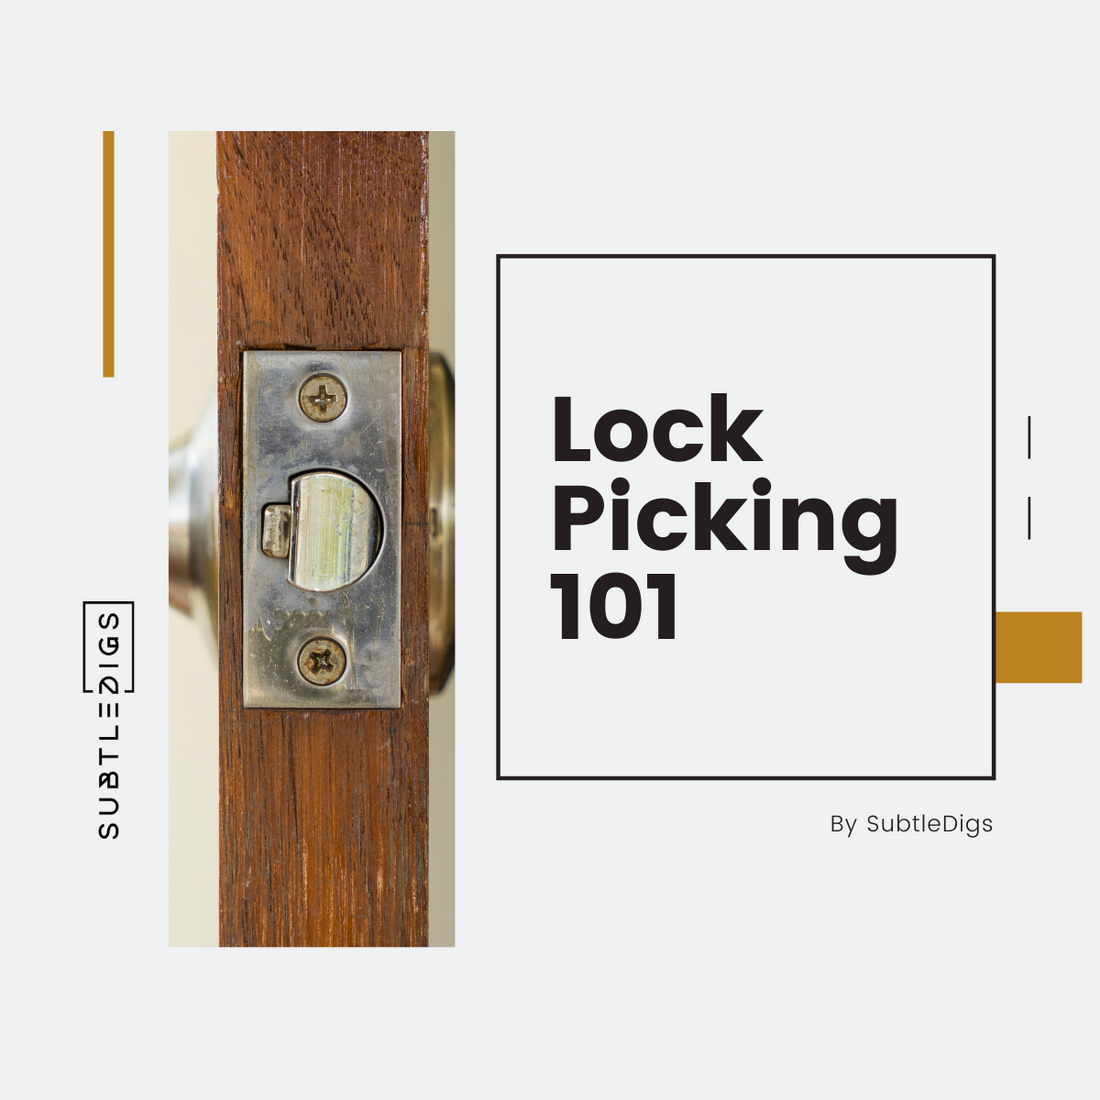 Lock Picking 101: How to Pick Locks